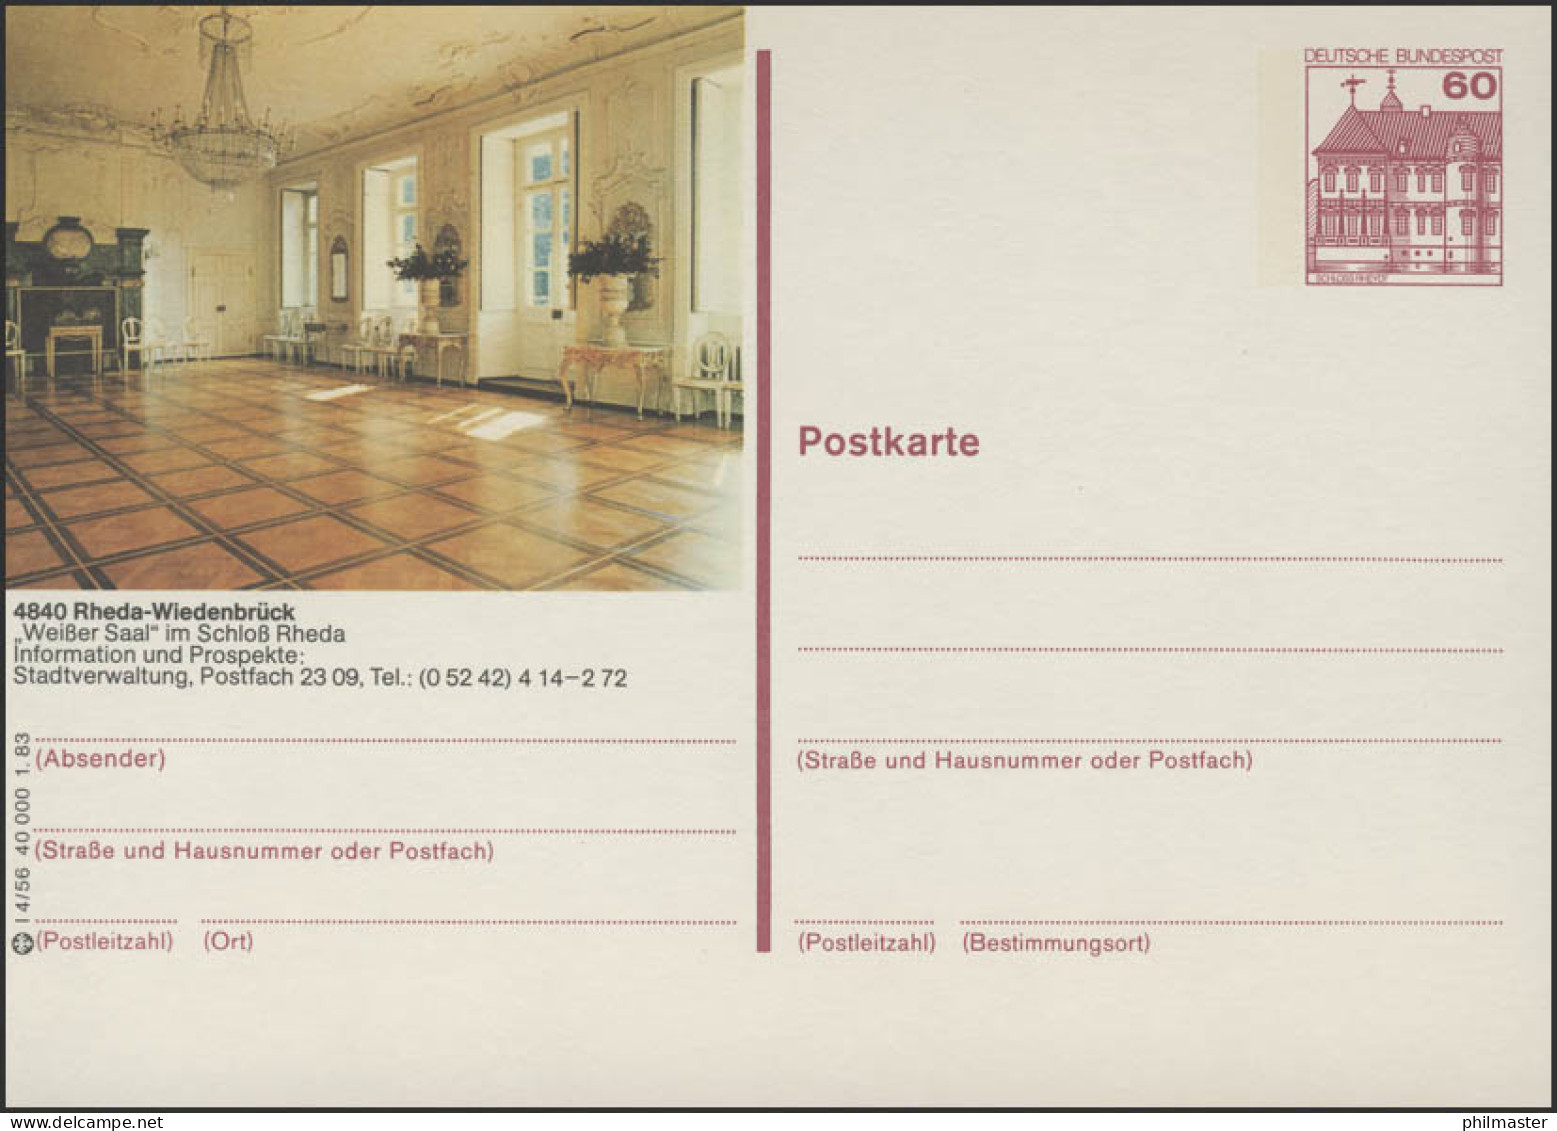 P138-l4/056 - 4840 Rheda-Wiedenbrück, Weißer Saal ** - Illustrated Postcards - Mint